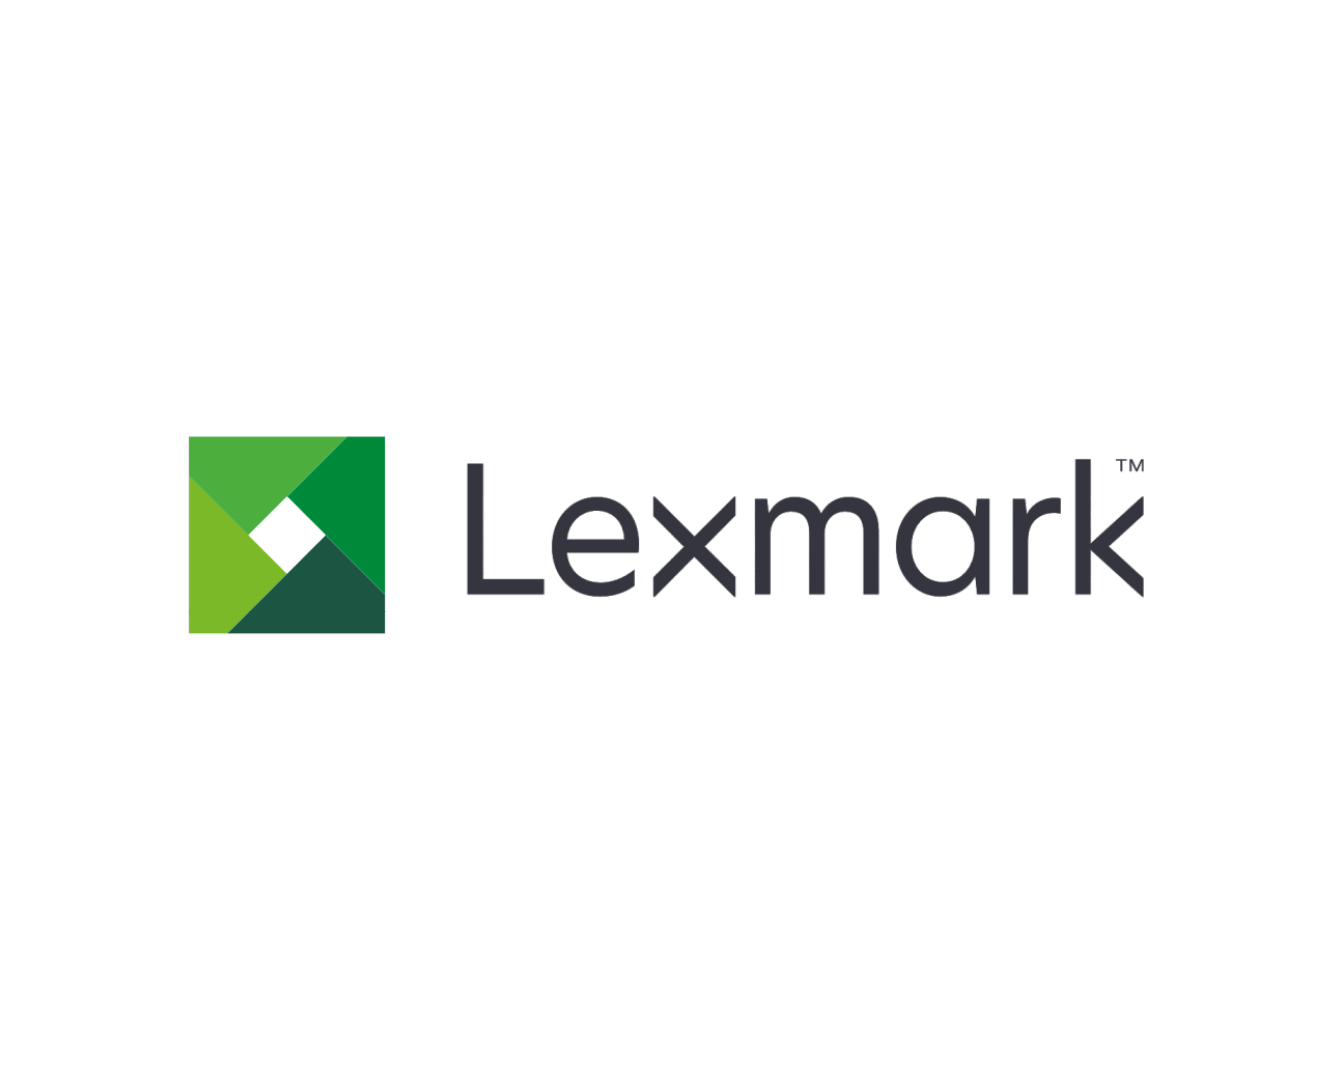 Lexmark : Brand Short Description Type Here.